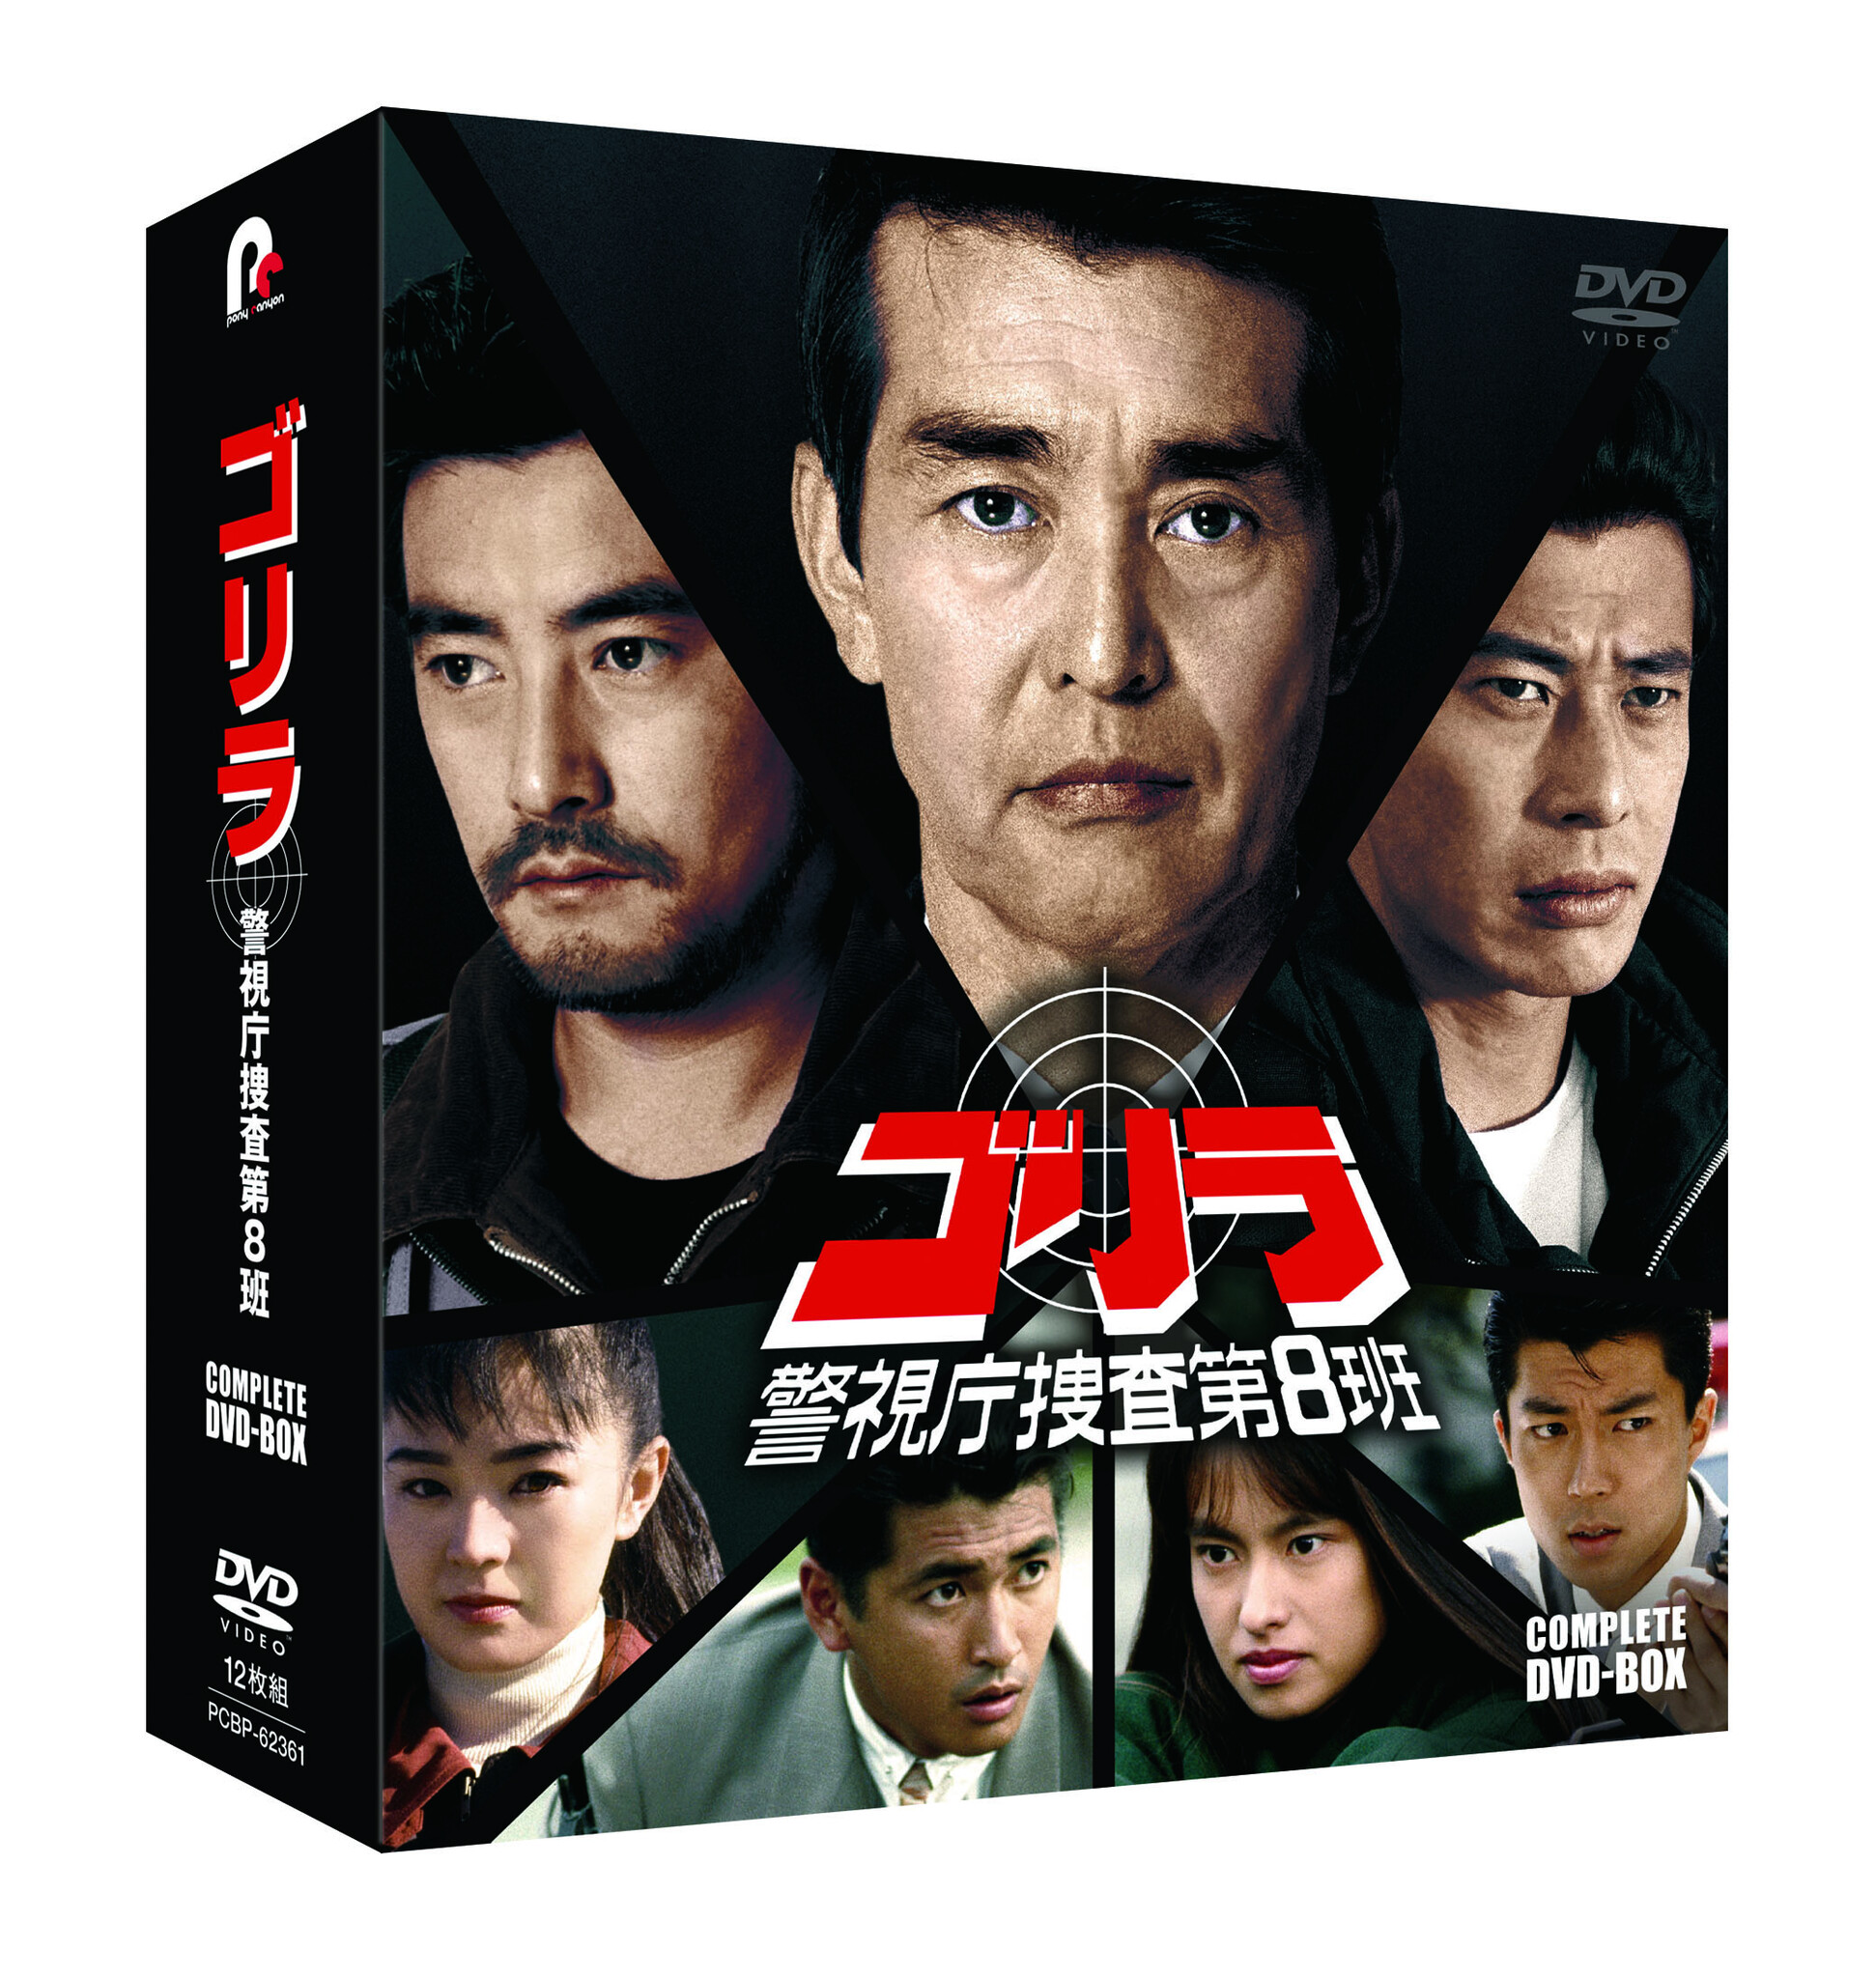 専門店では 【全巻セット】ゴリラ 警視庁捜査第8班 season1+2 DVD